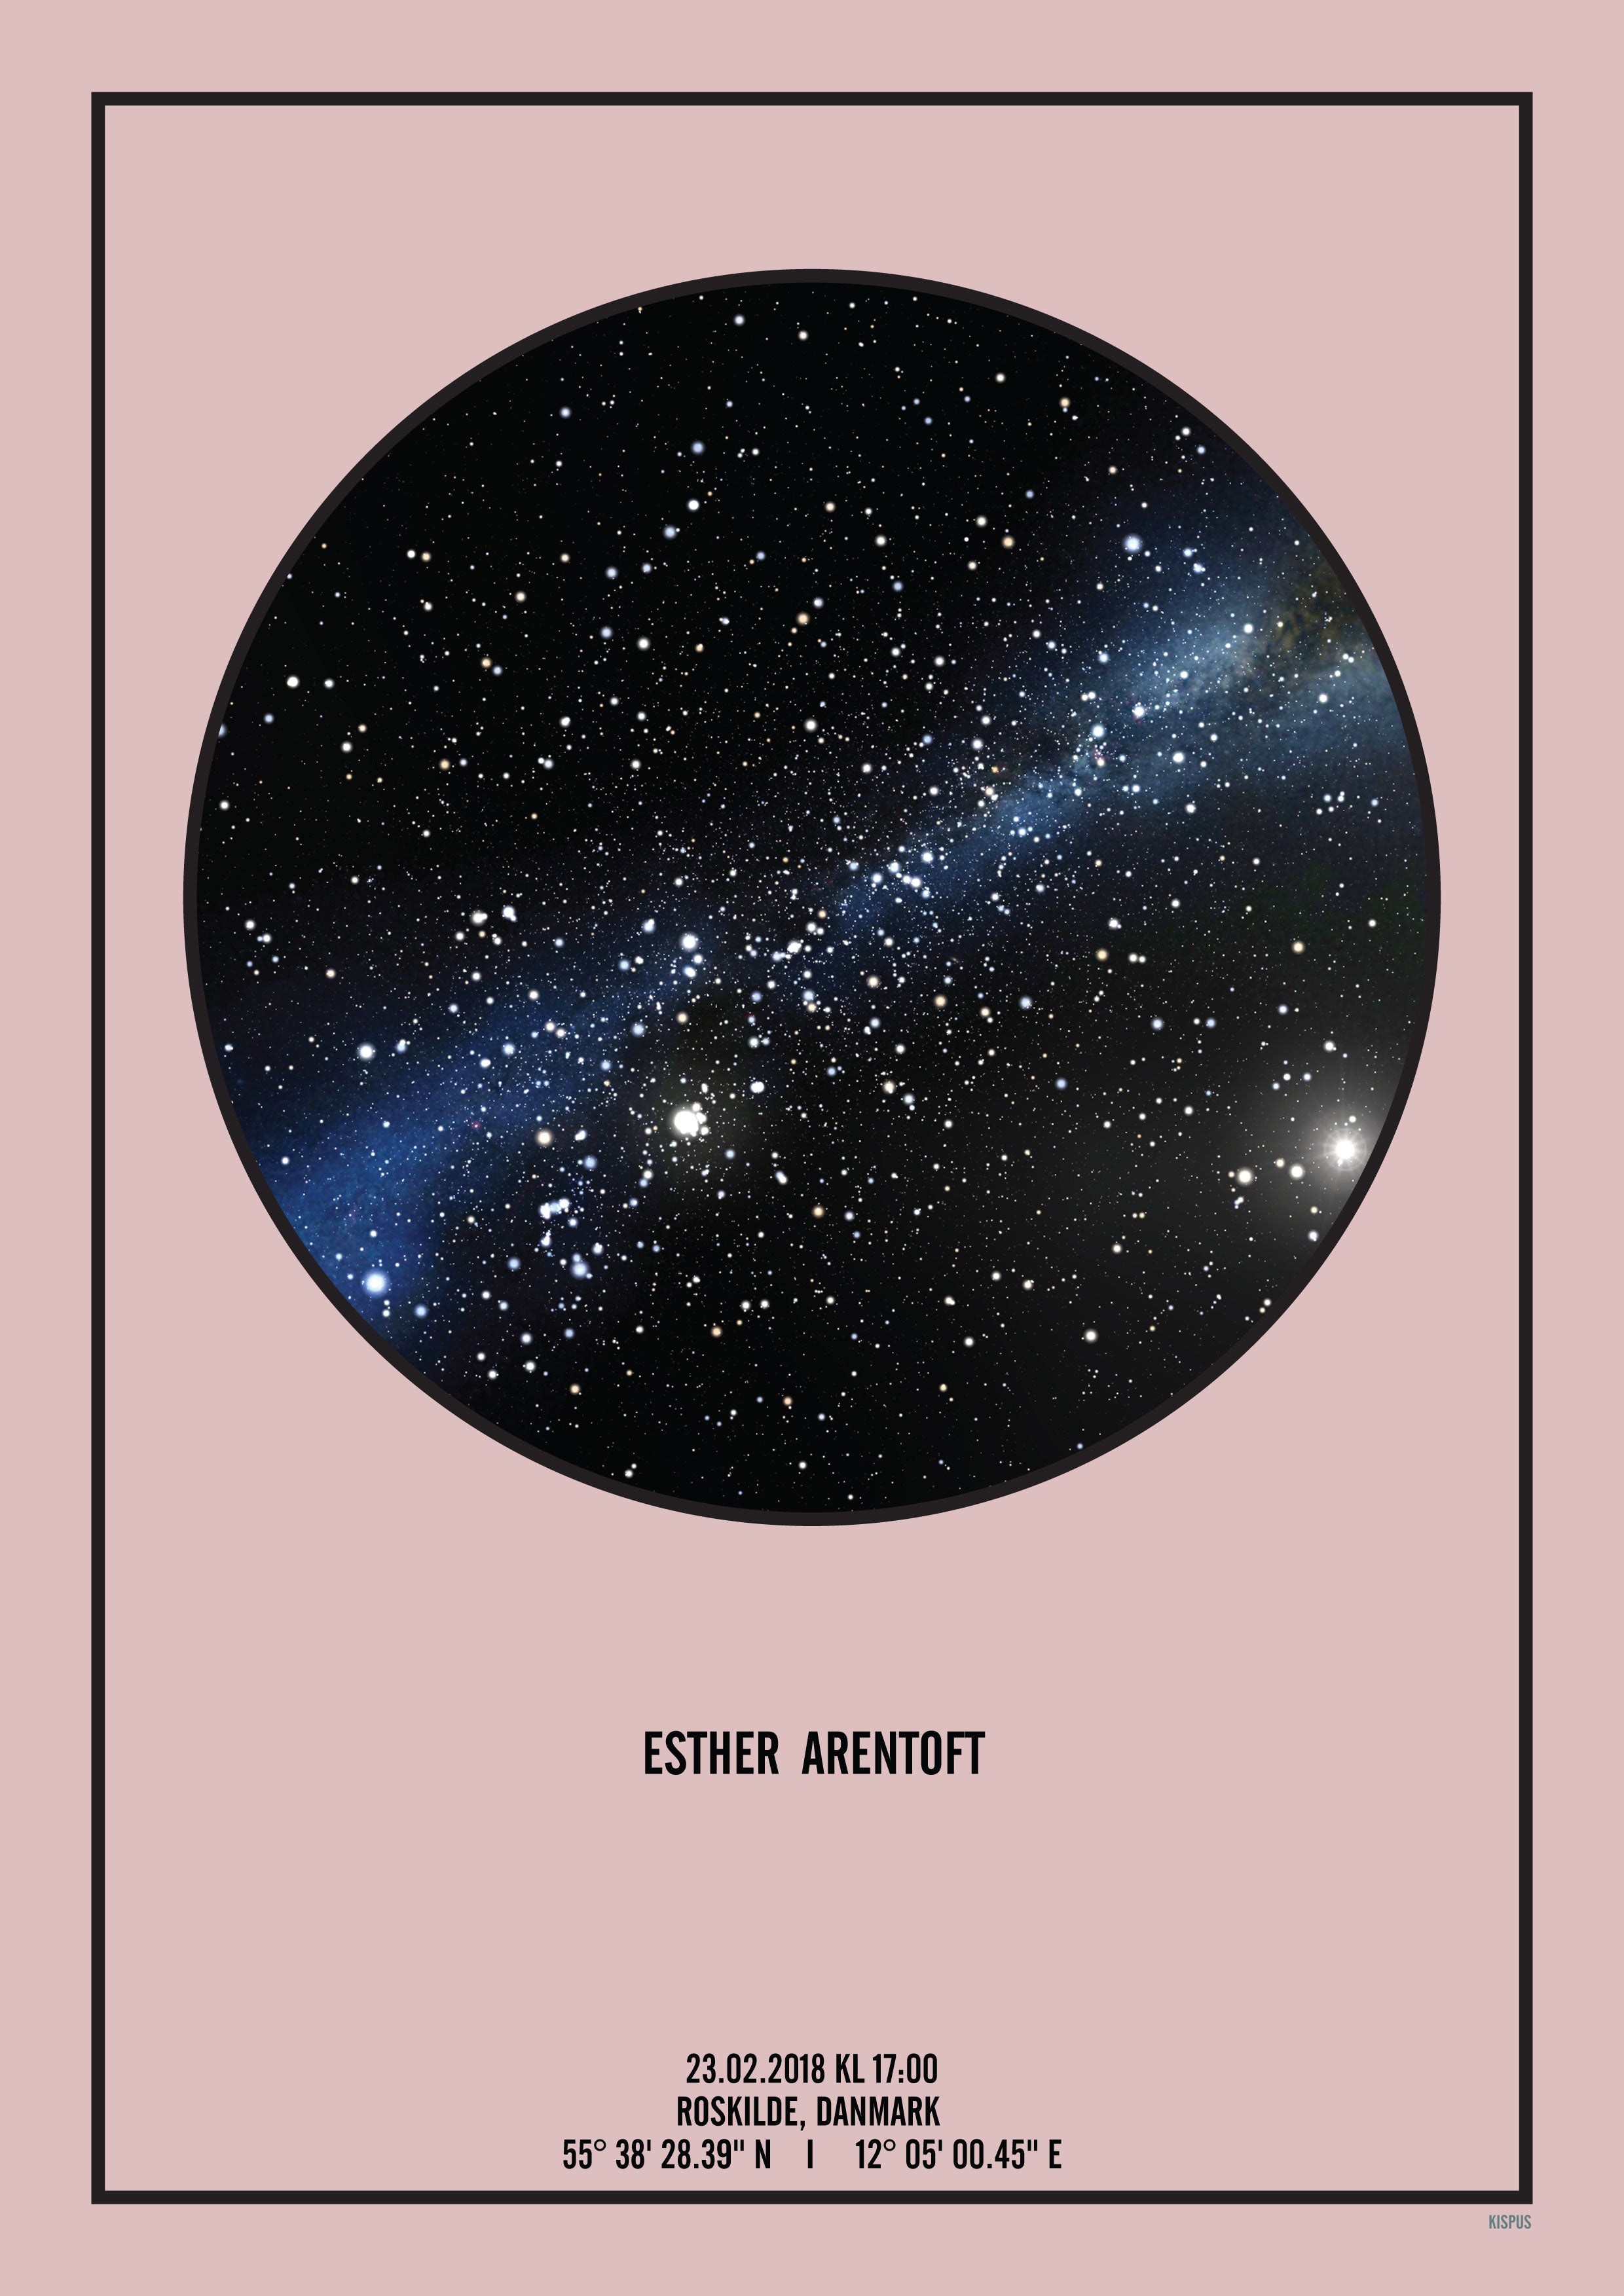 Se PERSONLIG STJERNEHIMMEL PLAKAT (LYSERØD) - 30x40 / Sort tekst og sort stjernehimmel / Stjernehimmel med mælkevej hos KISPUS